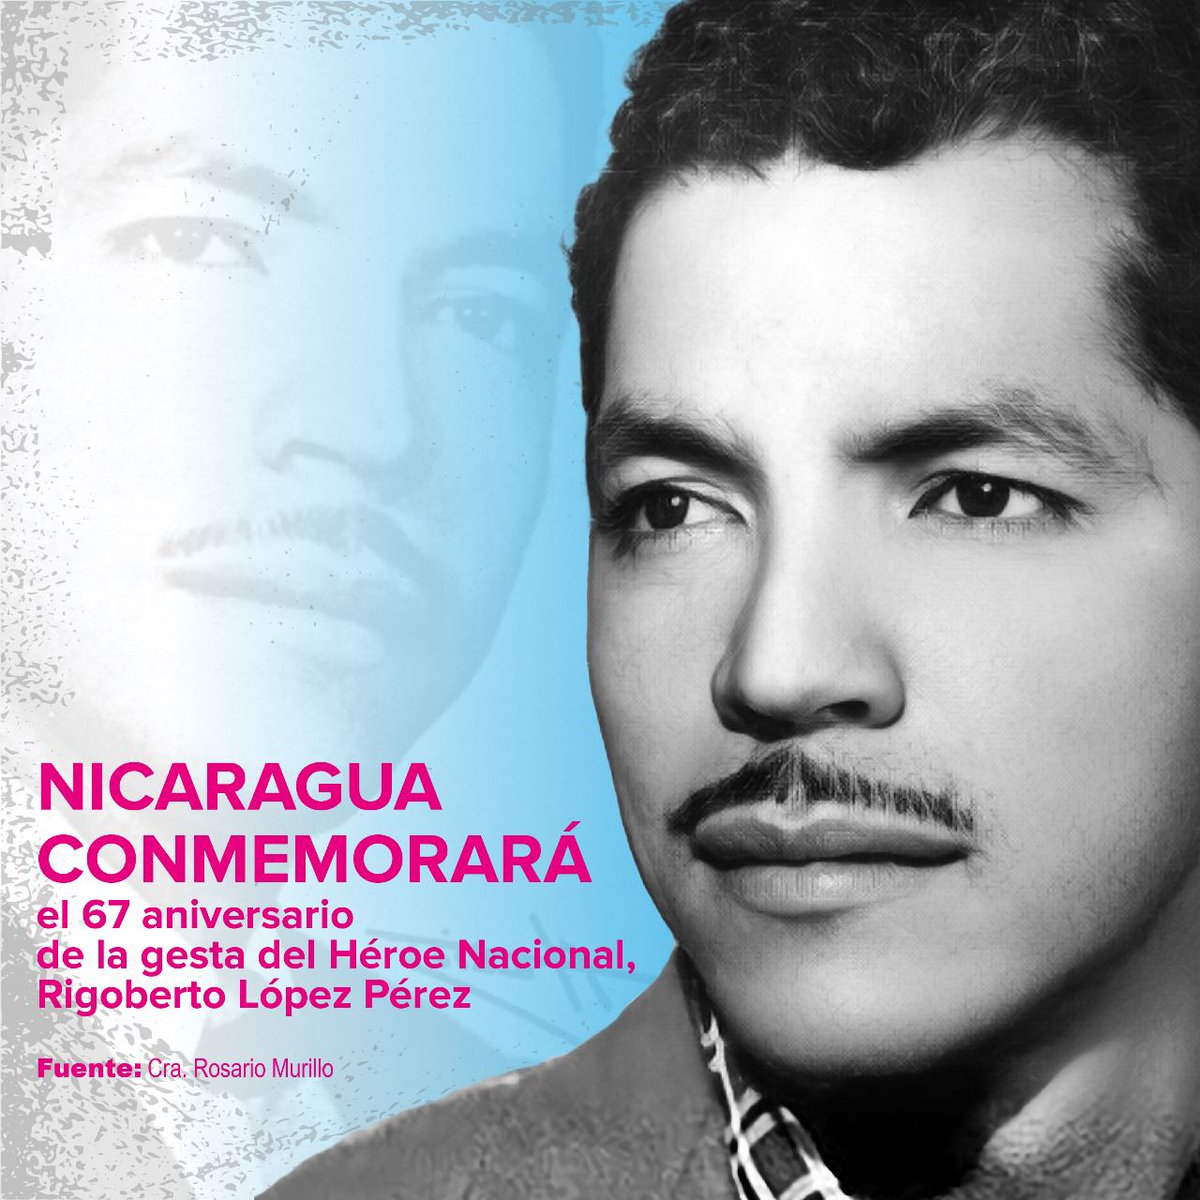 #21Septembre
#Nicaragua

Hoy se cumple 67 años. De la  Gesta del Héroe Nacional, Rigoberto López Pérez, qué marcó el Principio del Fin de la Dictadura Somocista. 

'Lo mio no ha sido un Sacrificio sino un deber, qué espero haber Cumplido'

Honor y Gloria!

#AmoraNicaragua